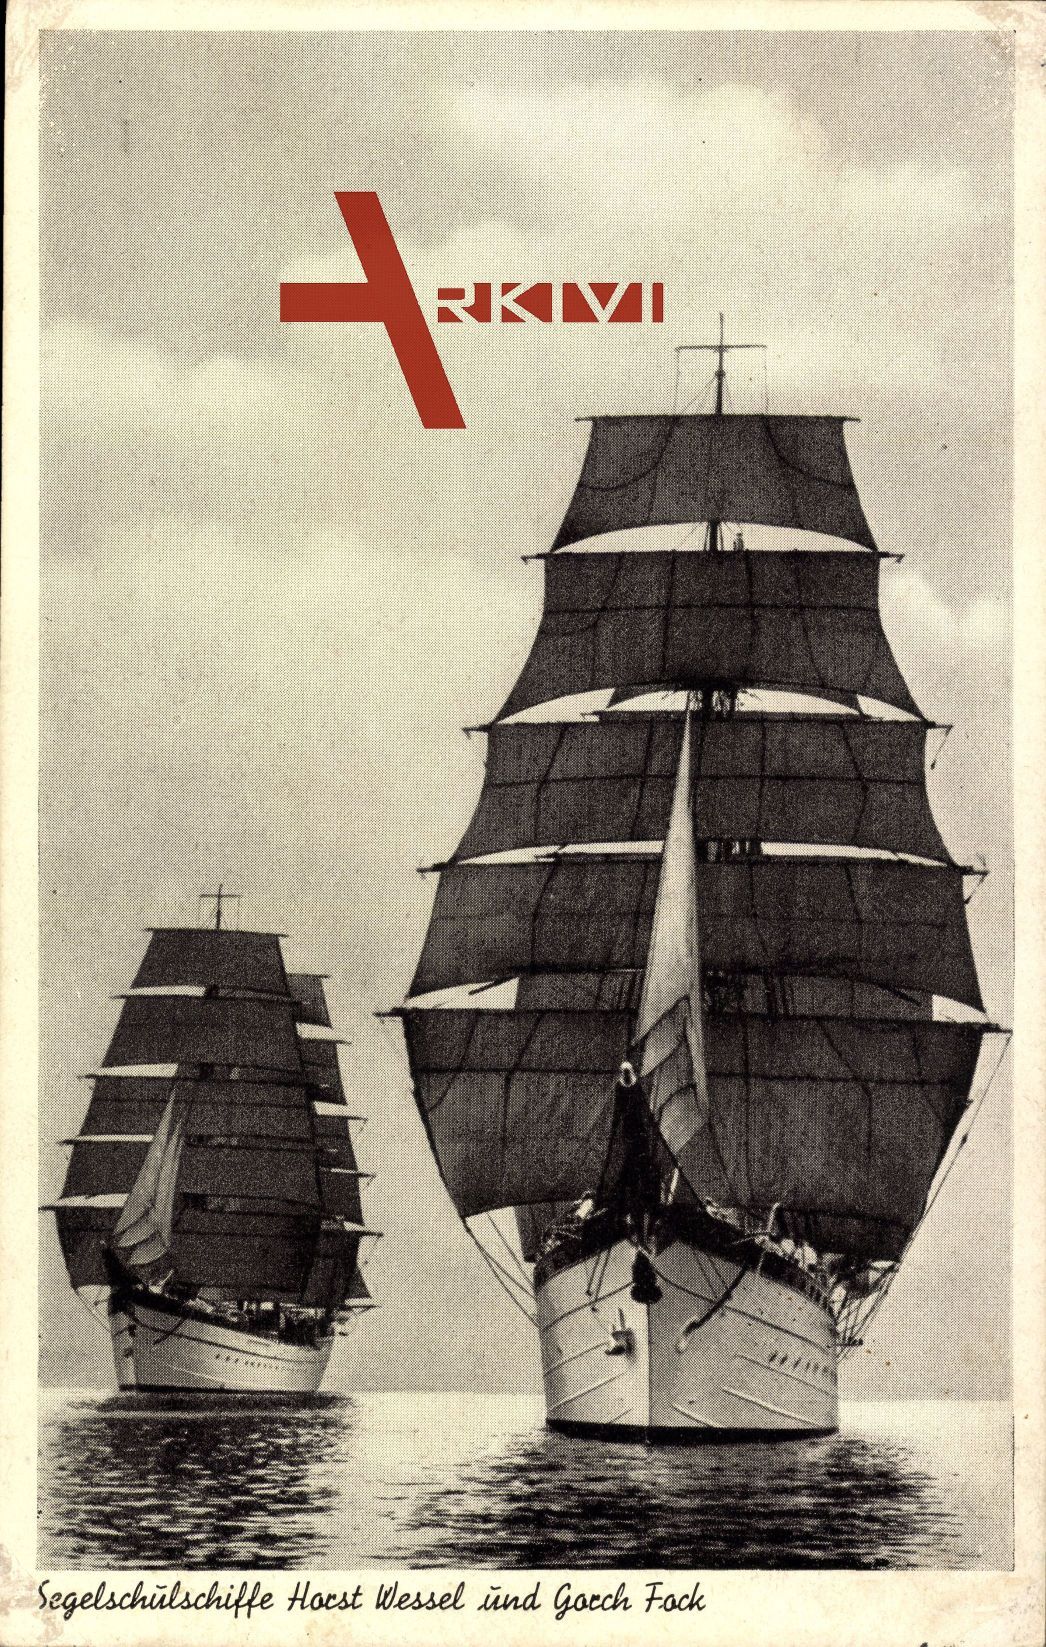 Segelschulschiffe Horst Wessel und Gorch Fock, Kriegsmarine